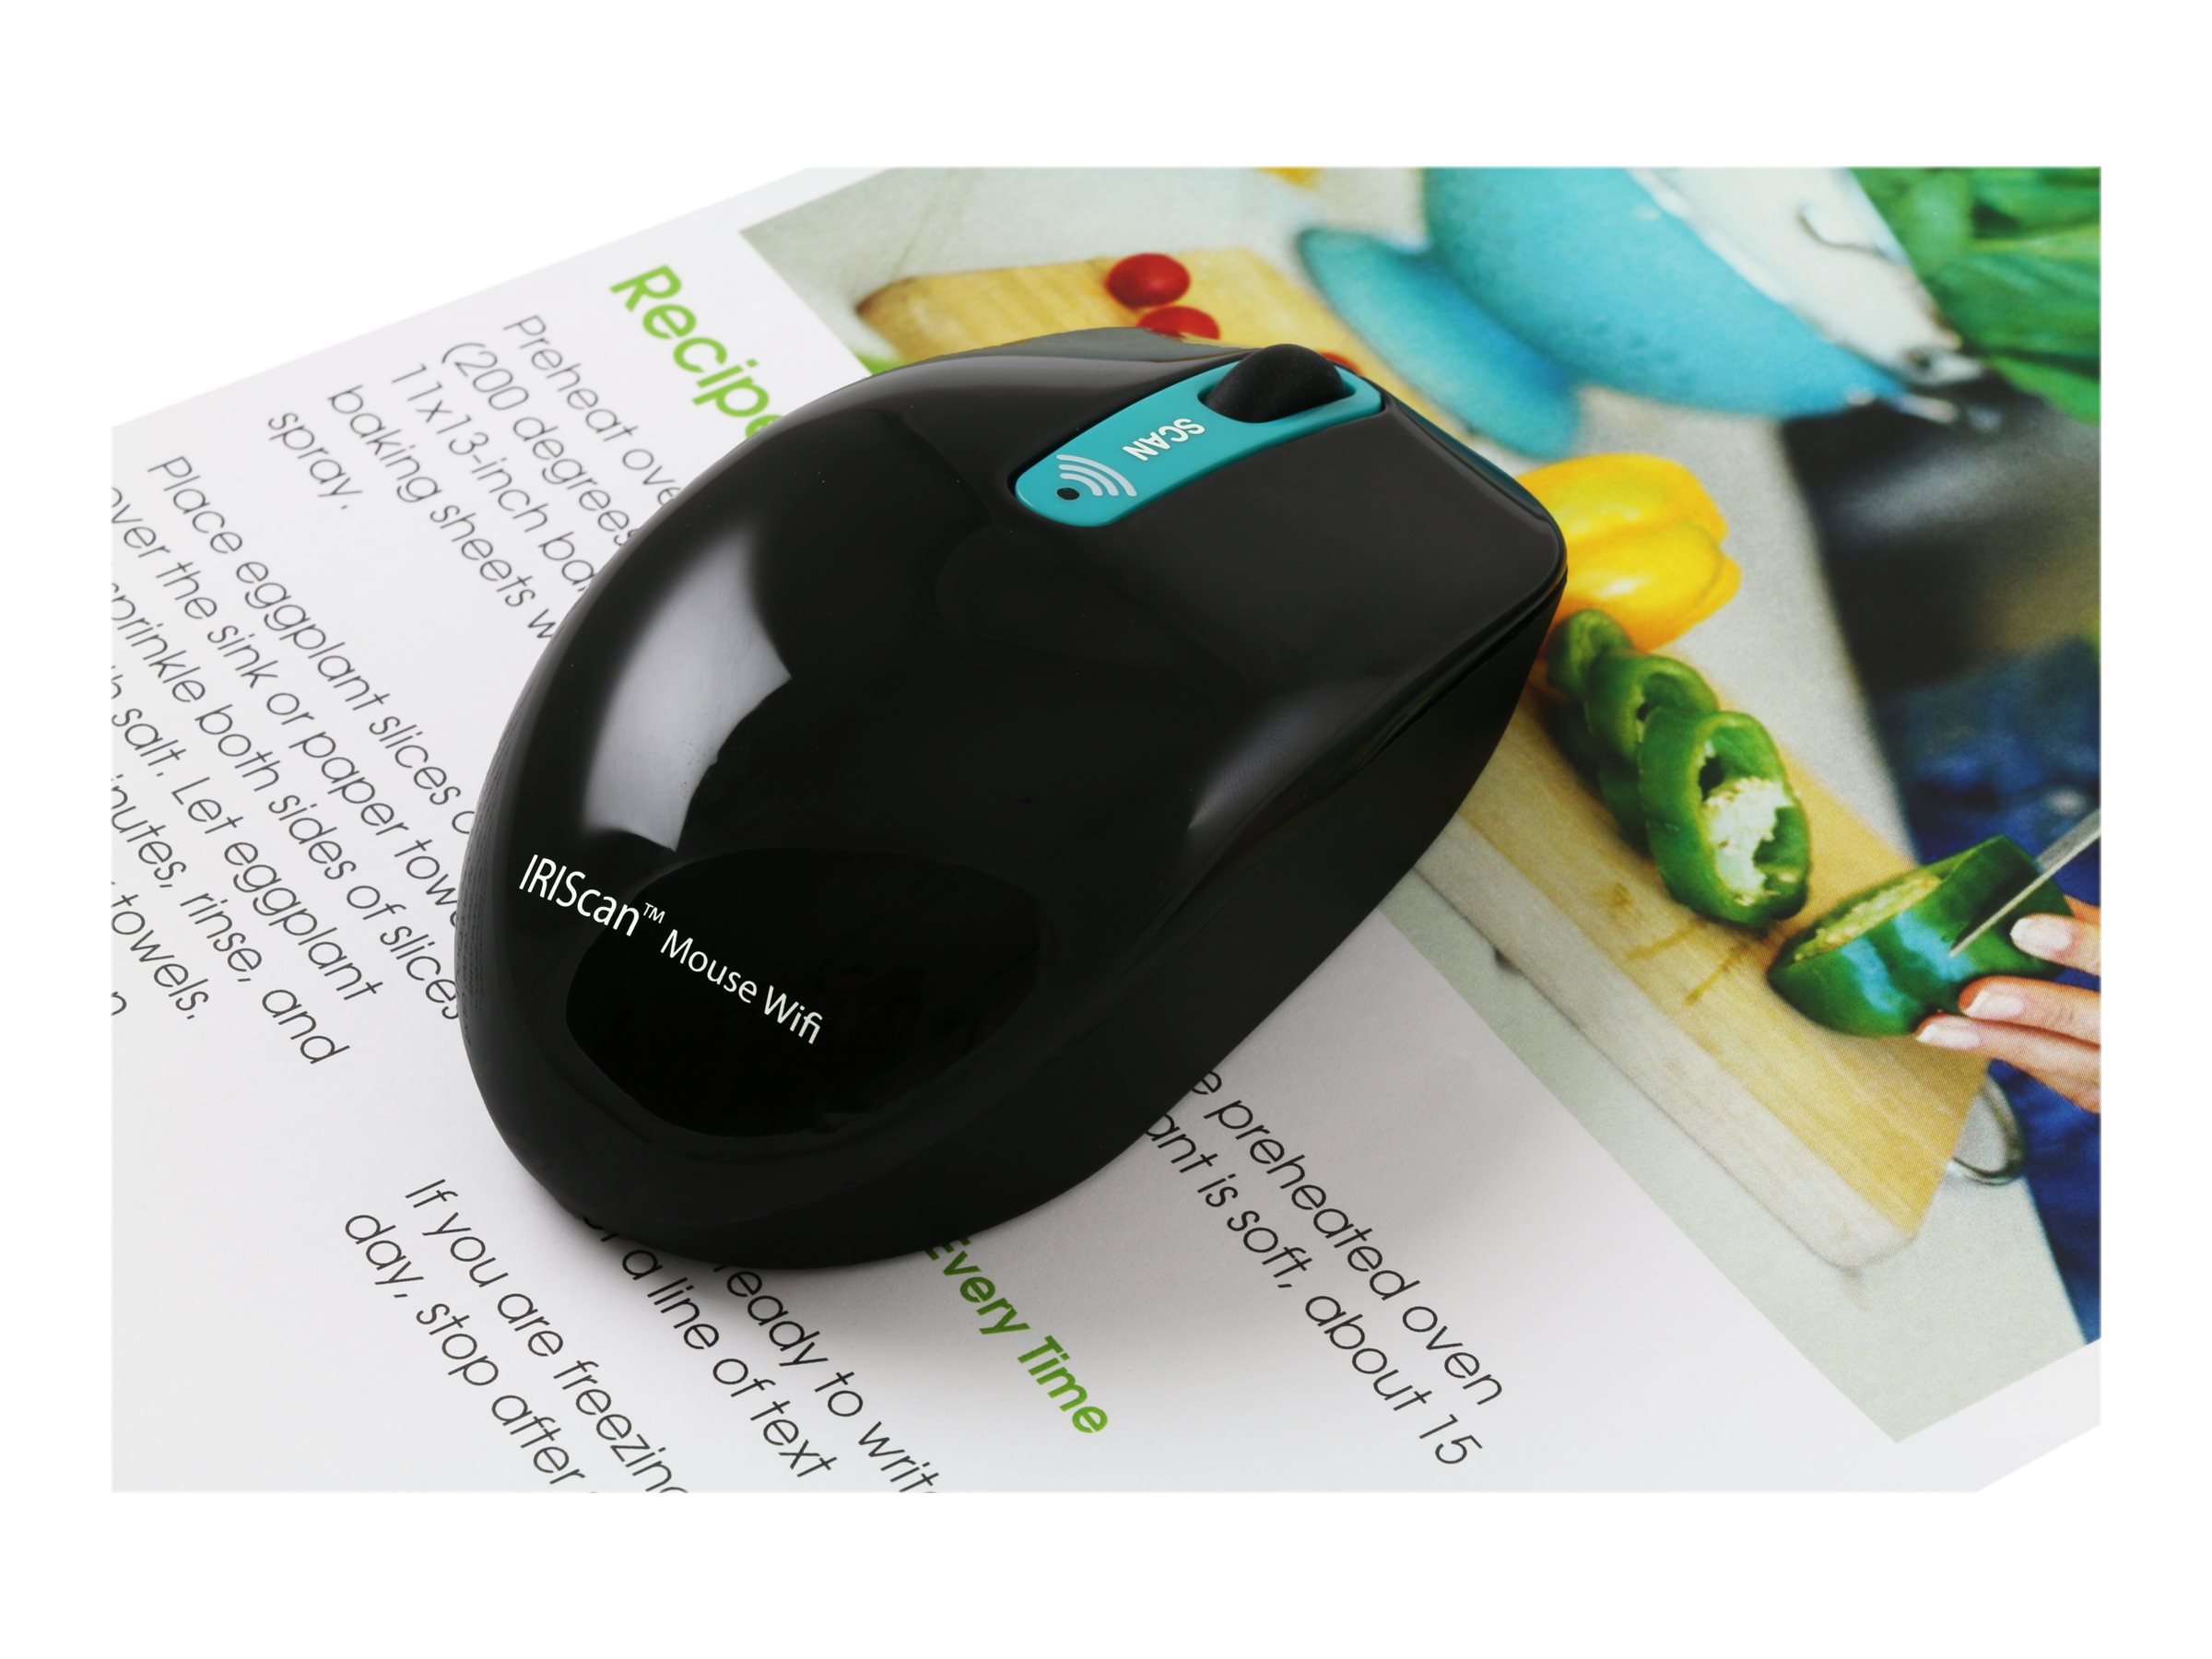 Мышка scanning. Сканер i.r.i.s. IRISCAN Mouse. Сканер беспроводной купить Германия. Сканер i.r.i.s. book 3. Мышь сканер